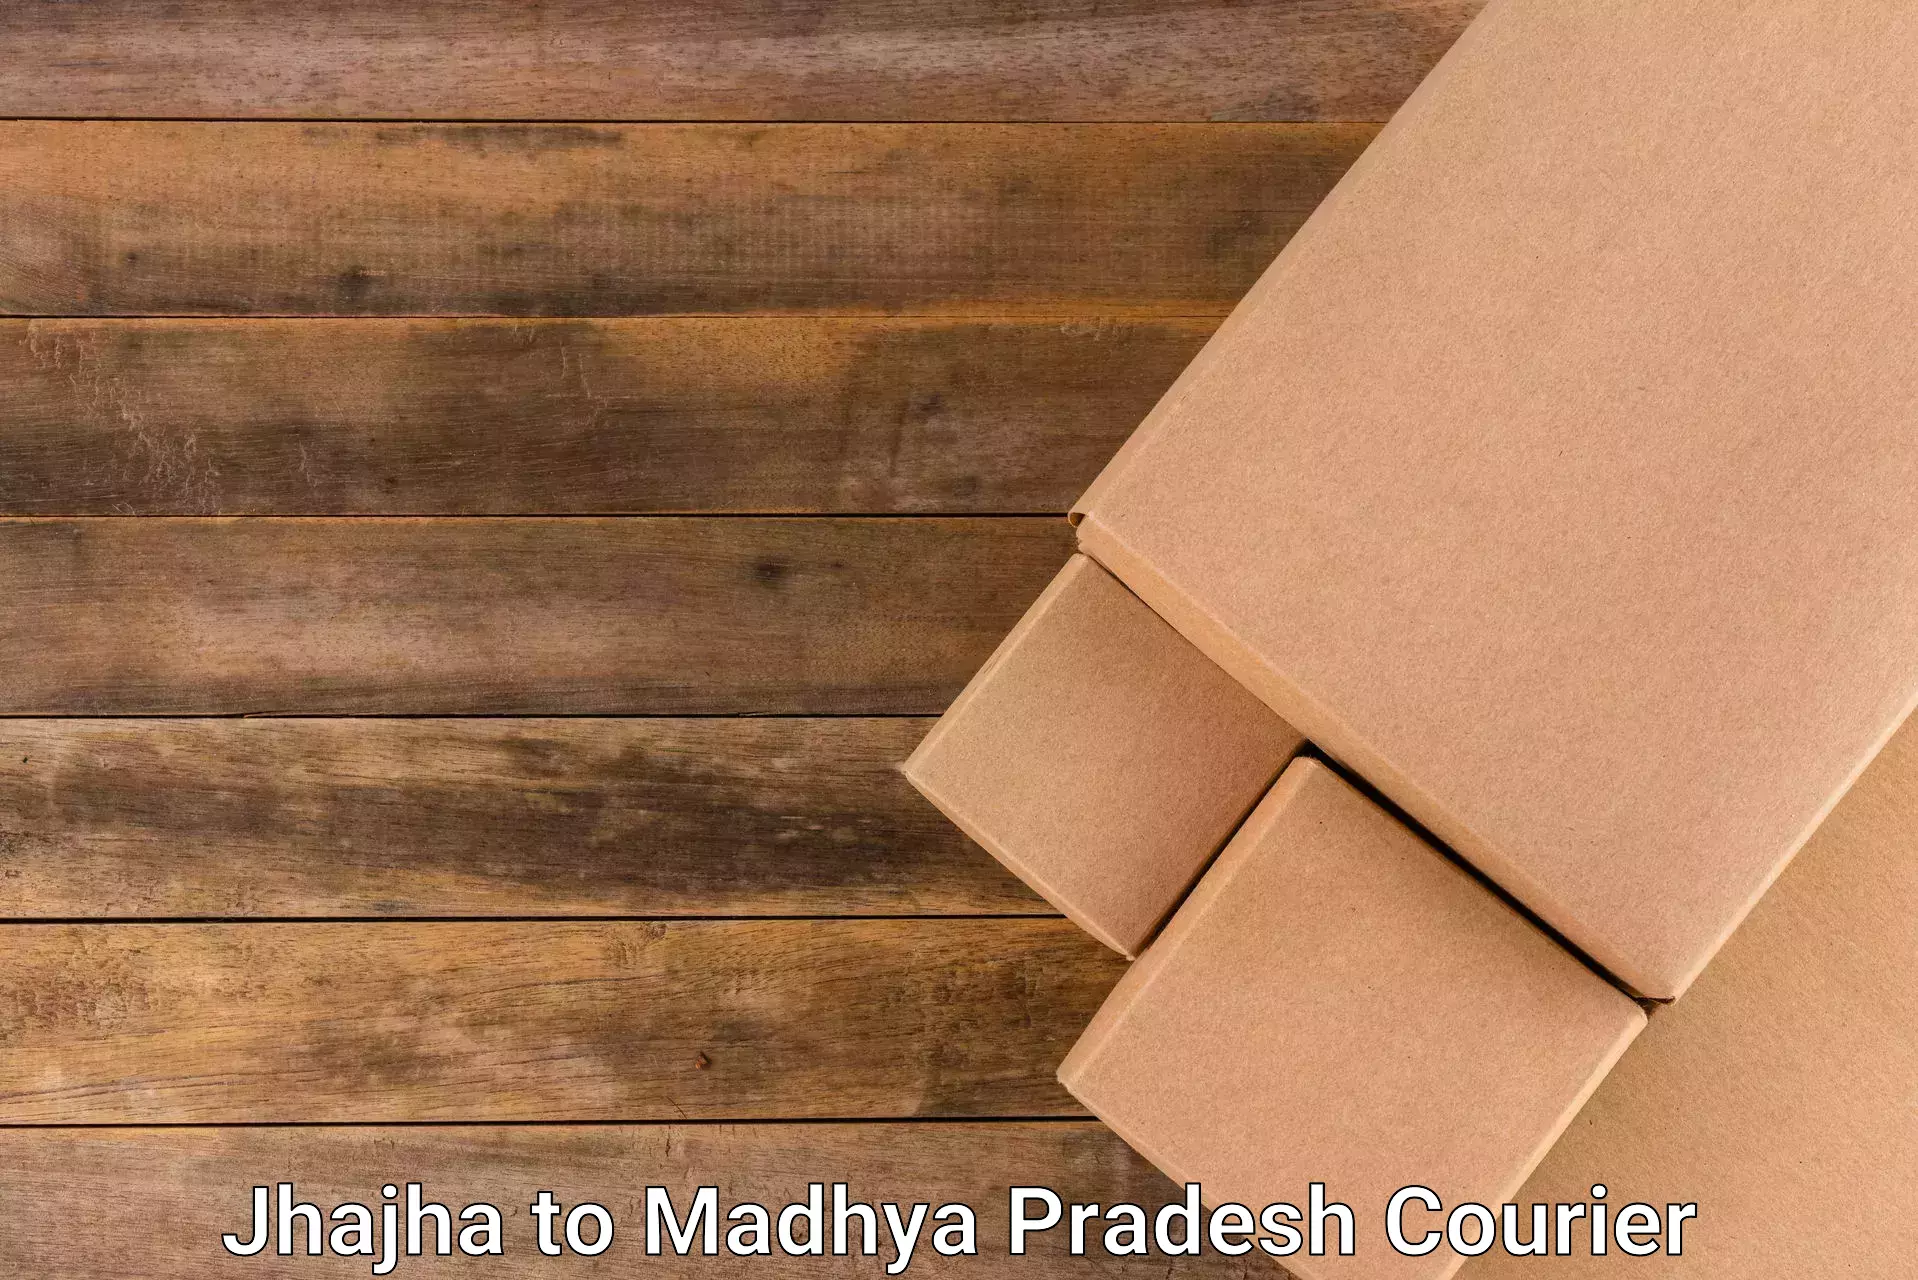 Package delivery network Jhajha to Banda Sagar